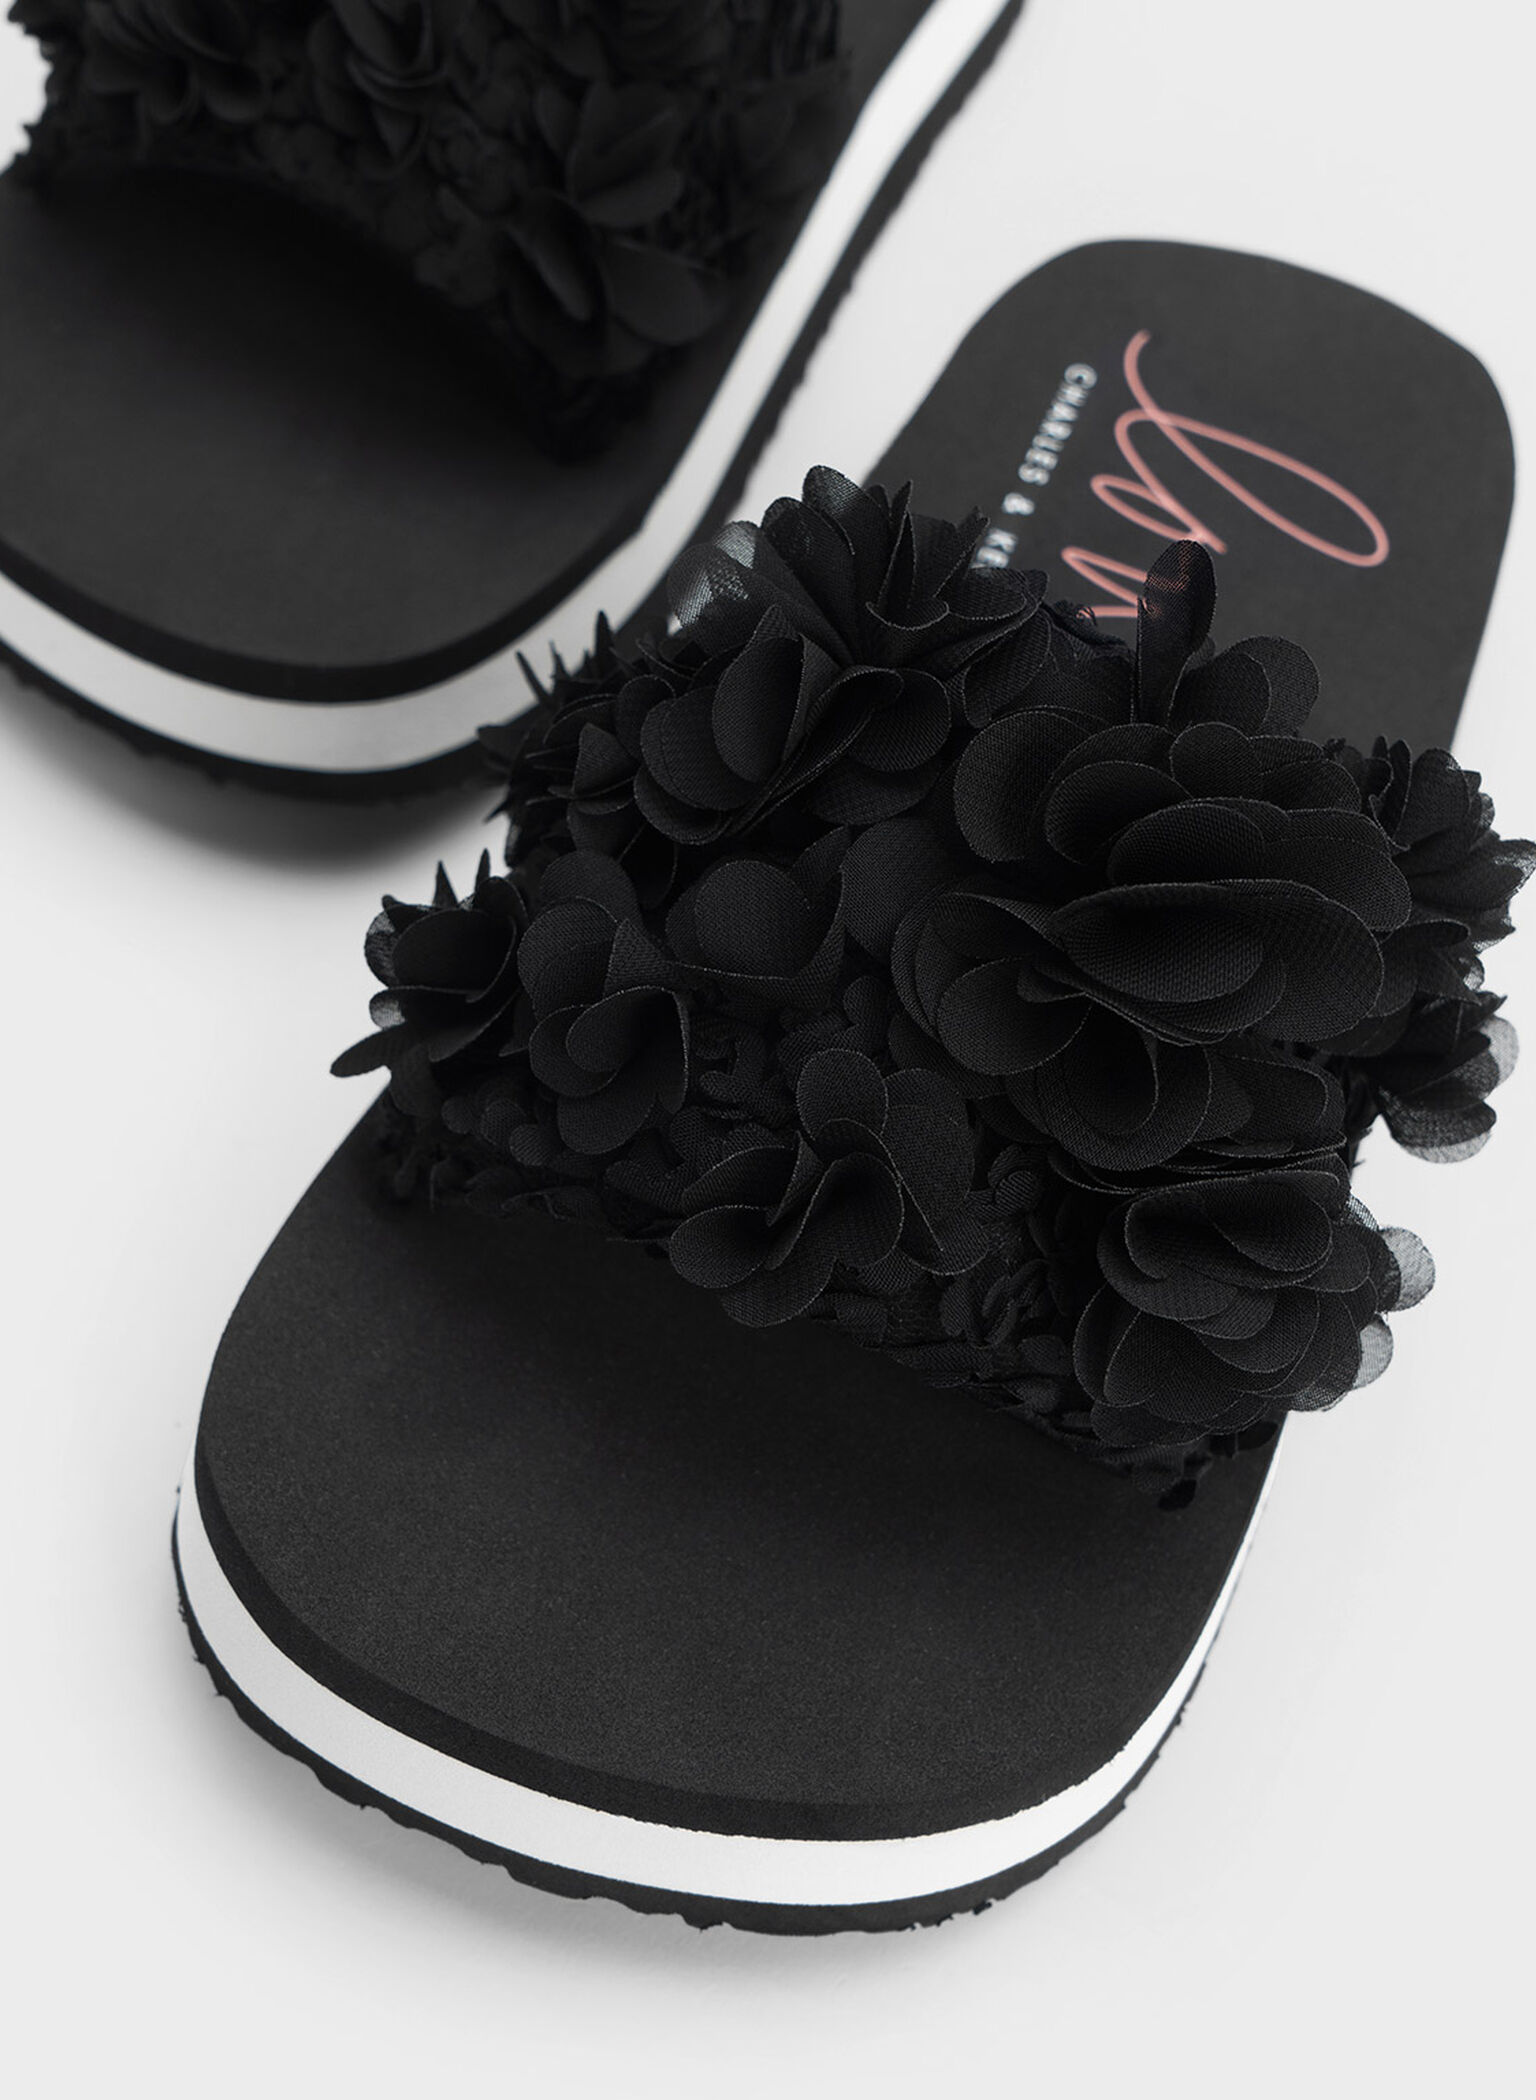 Floral Mesh Flatform Sandals, Black, hi-res